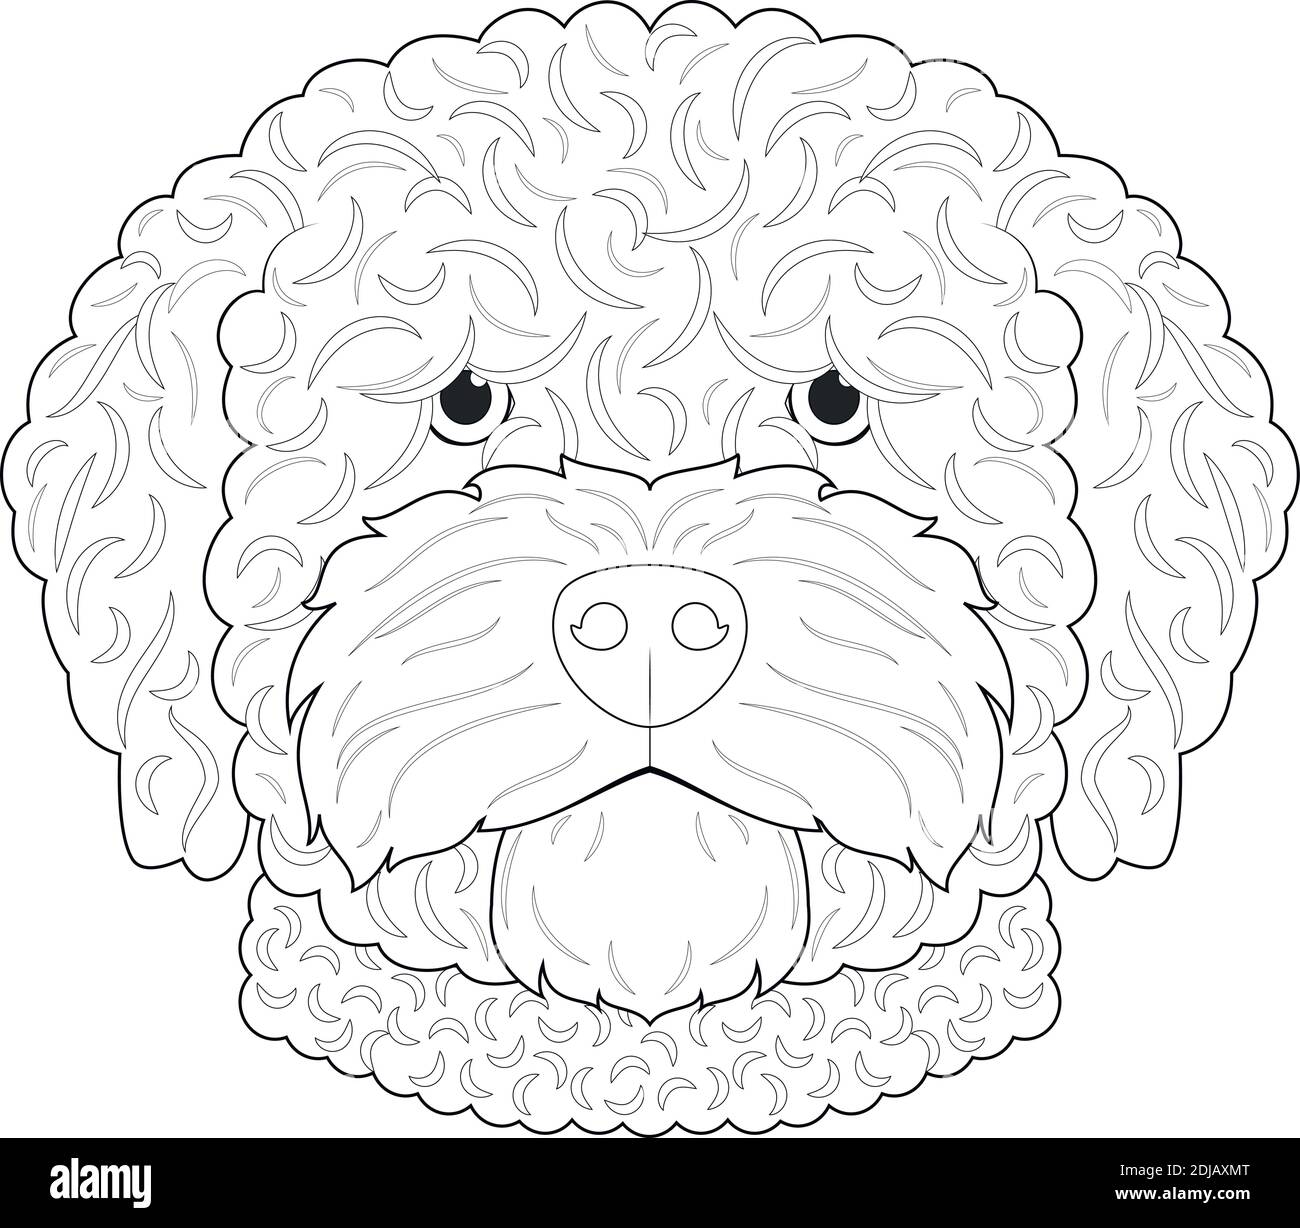 Spanish Water dog Easy coloriage dessin animé illustration vectorielle. Isolé sur fond blanc Illustration de Vecteur